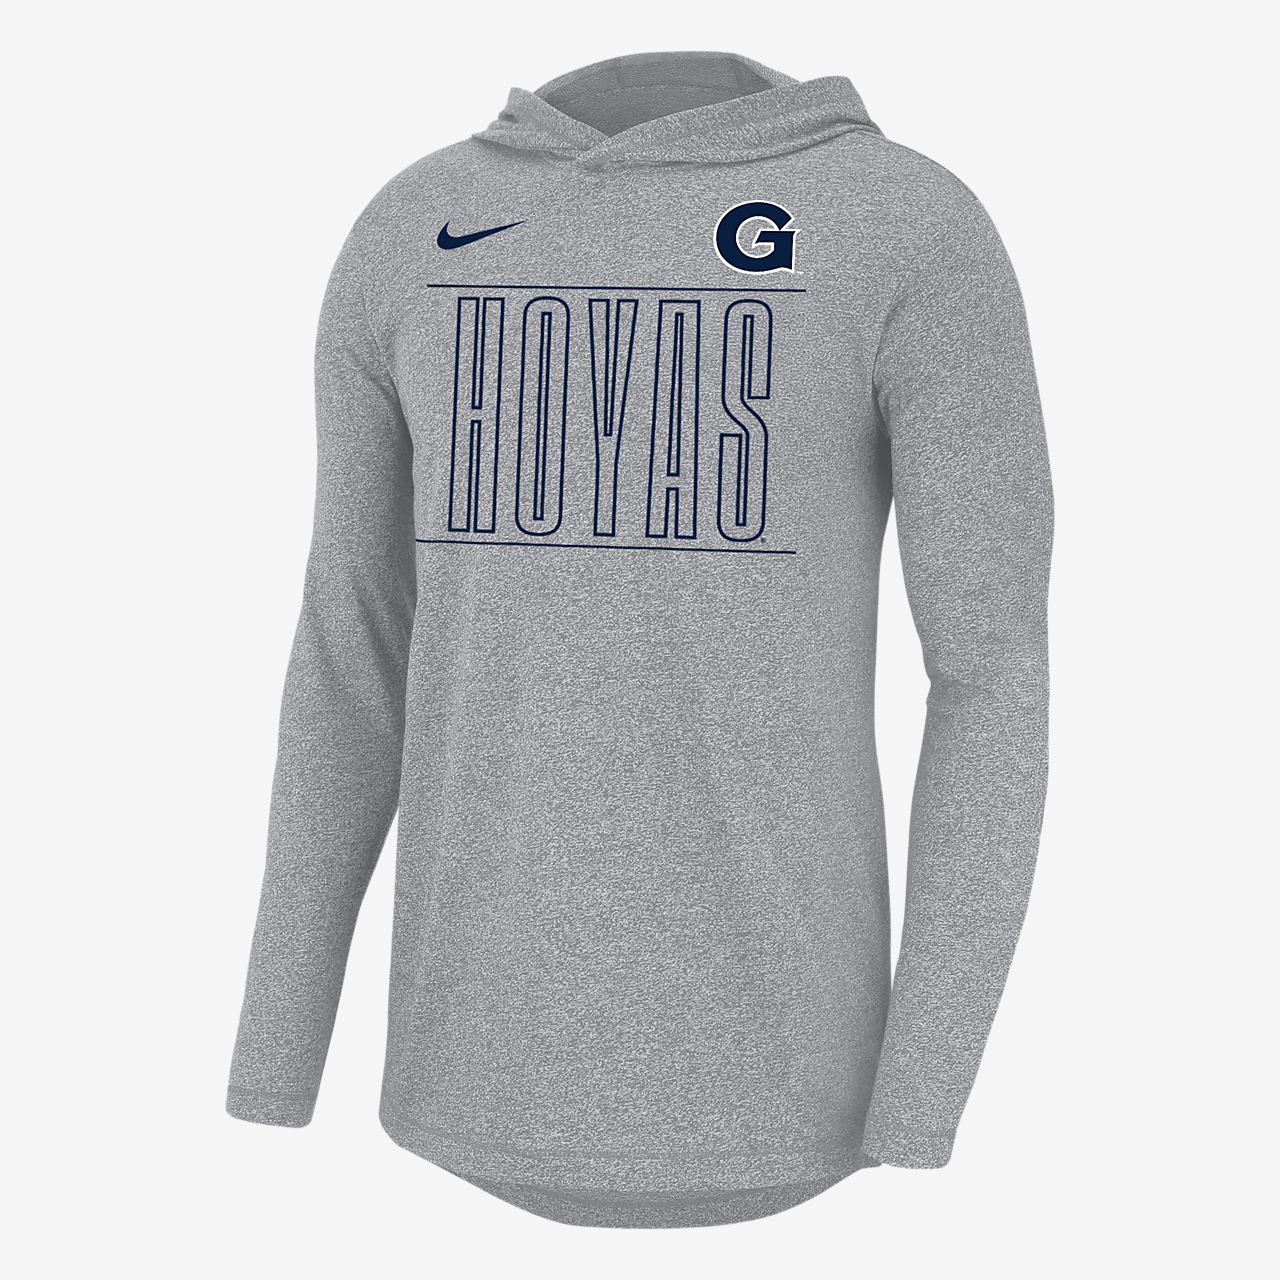 Nike College (Georgetown) Men's Long-Sleeve Hoodie. Nike.com